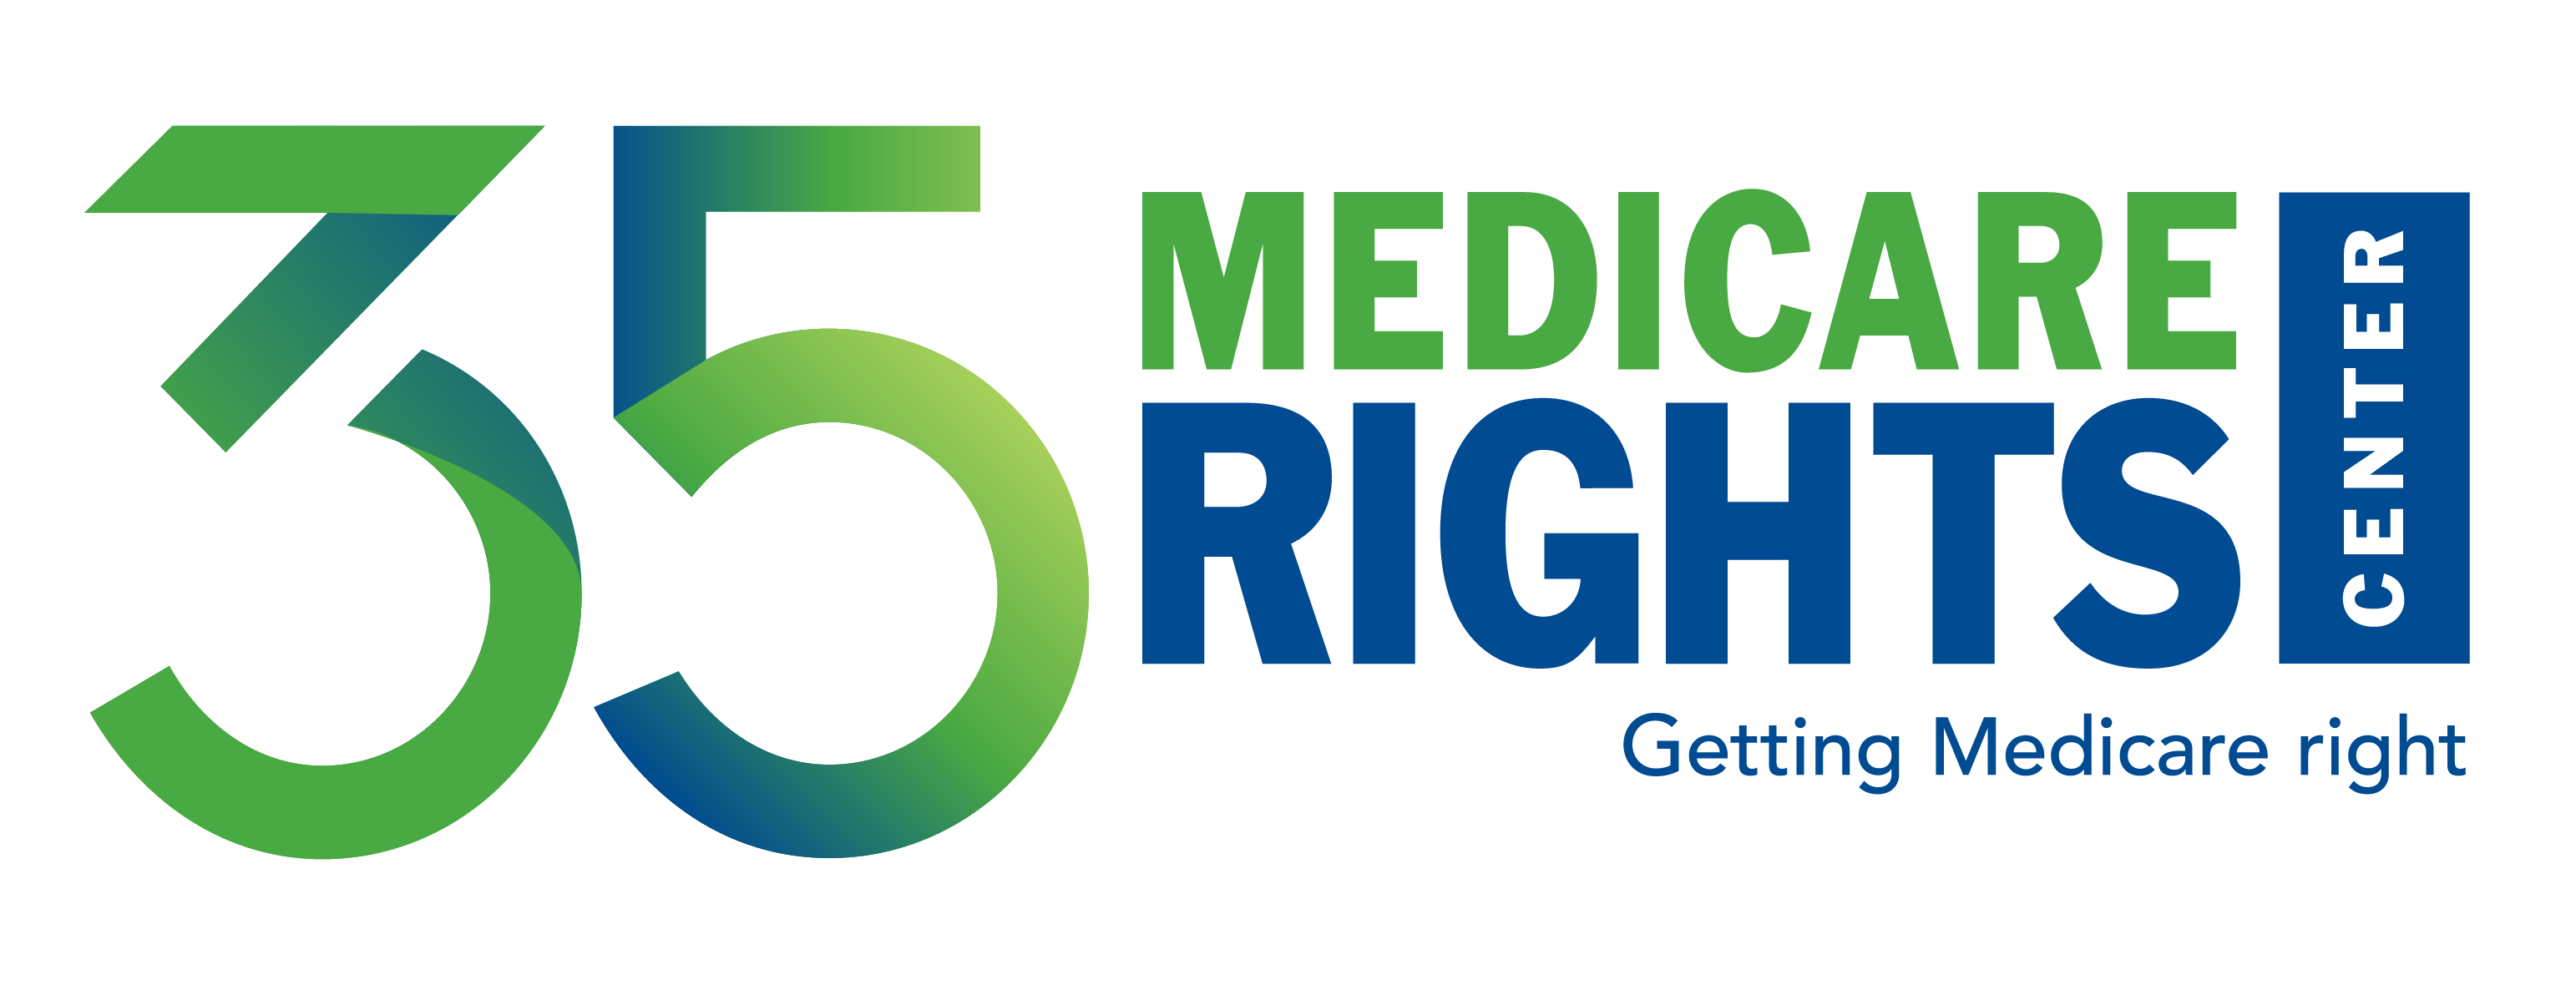 Medicare Rights Center logo logo